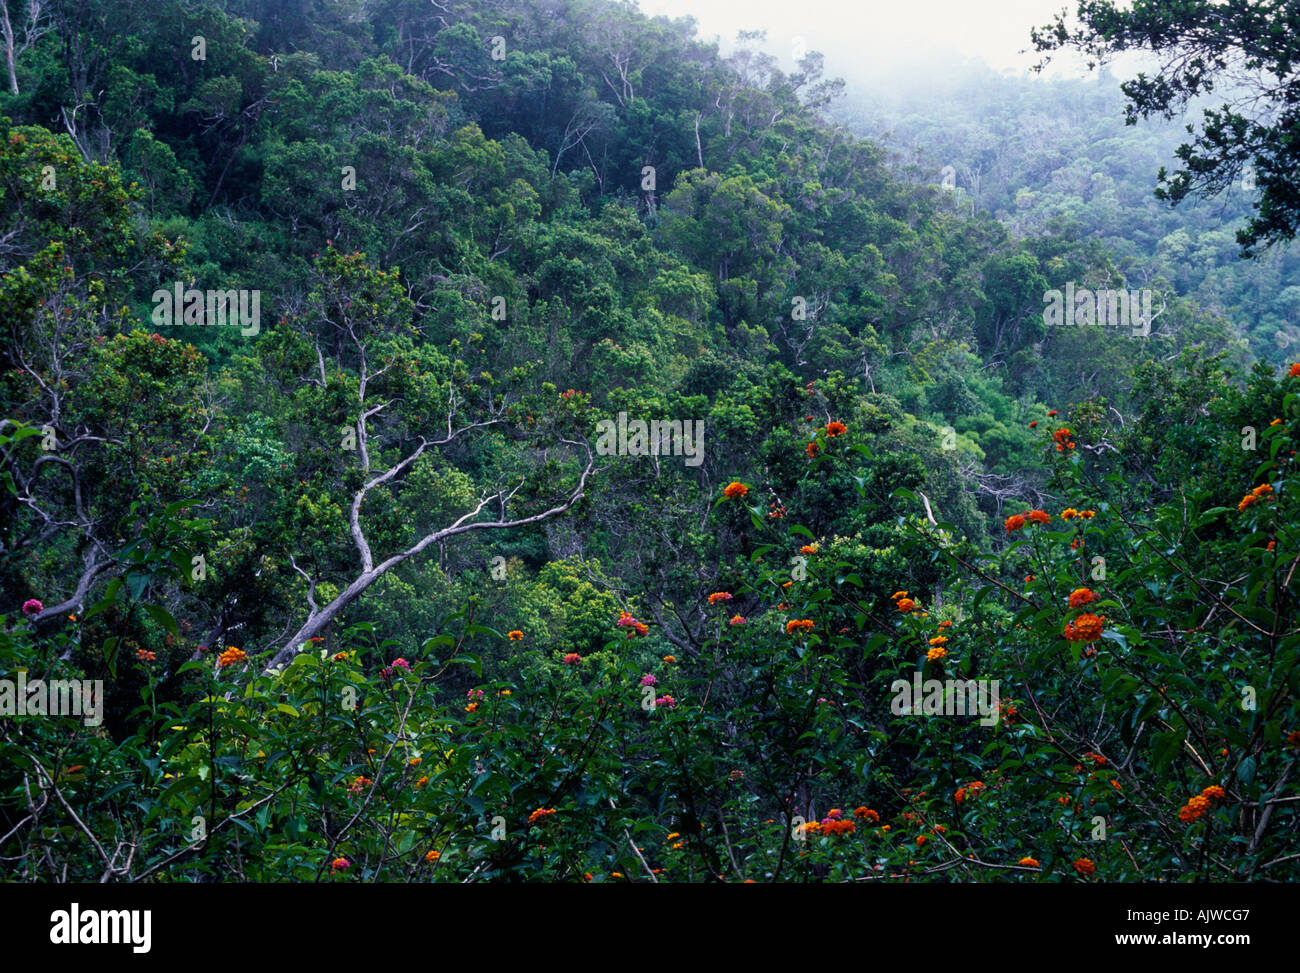 Tropicale foresta umida, foresta pluviale, Kokee State Park, Isola di Kauai, Hawaii con Koa, Acacia koa, alberi Foto Stock